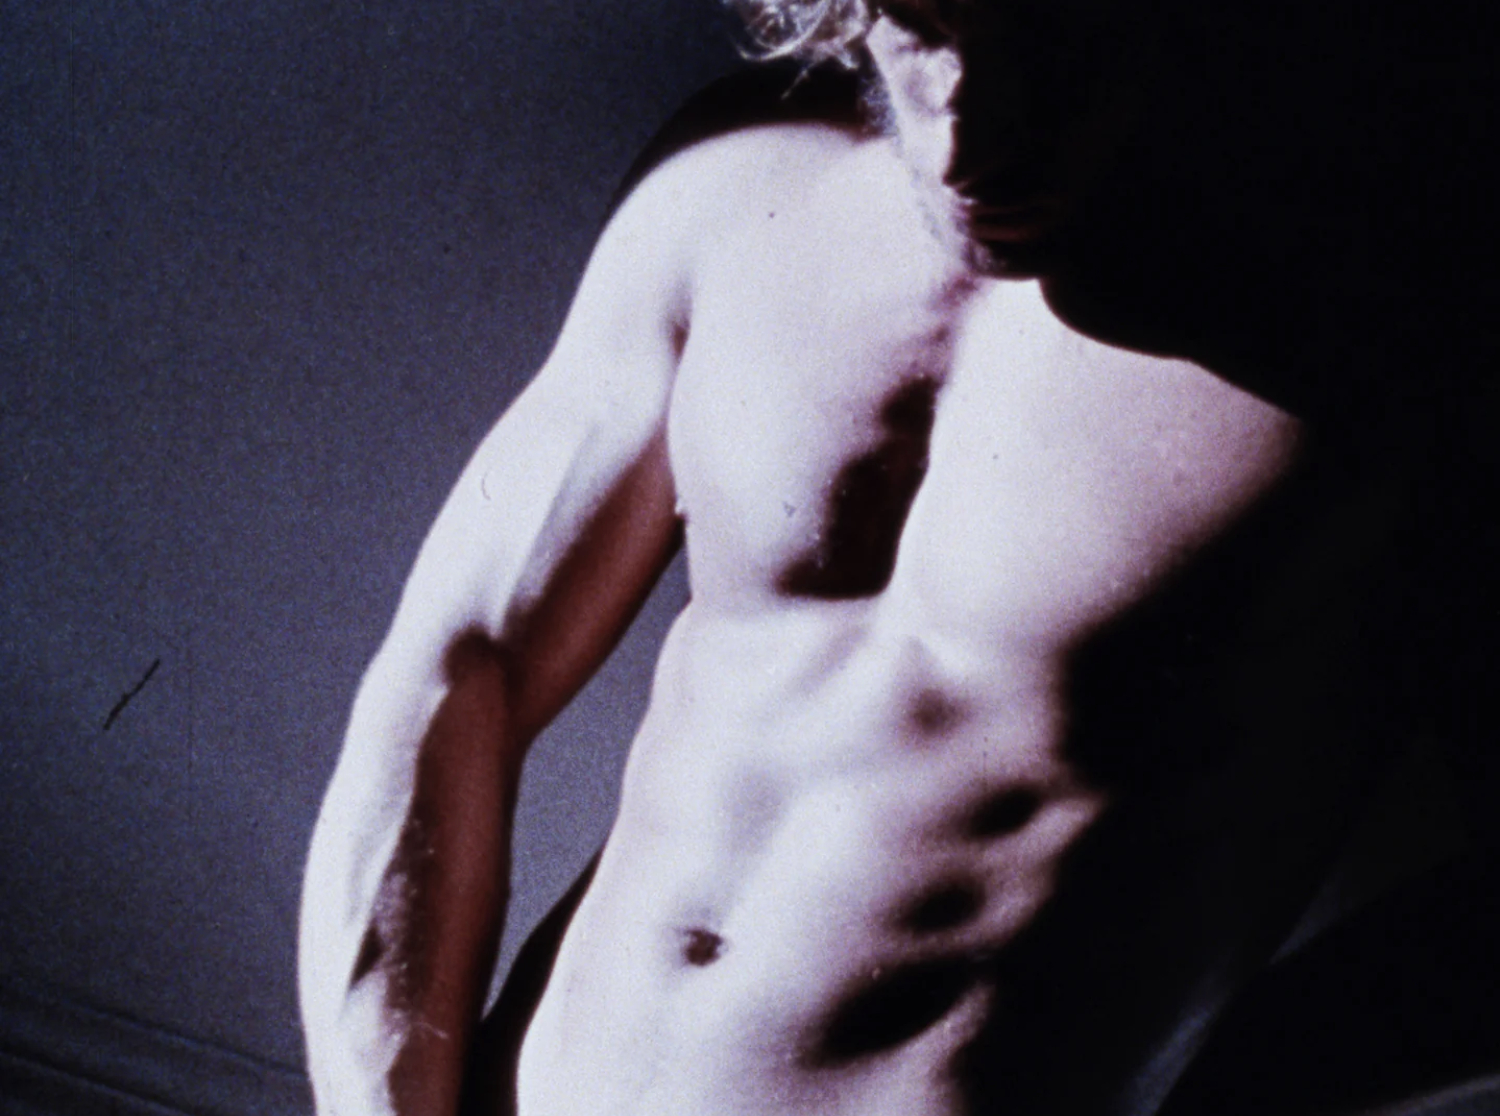 Fred Halsted, du porno gay au MoMA